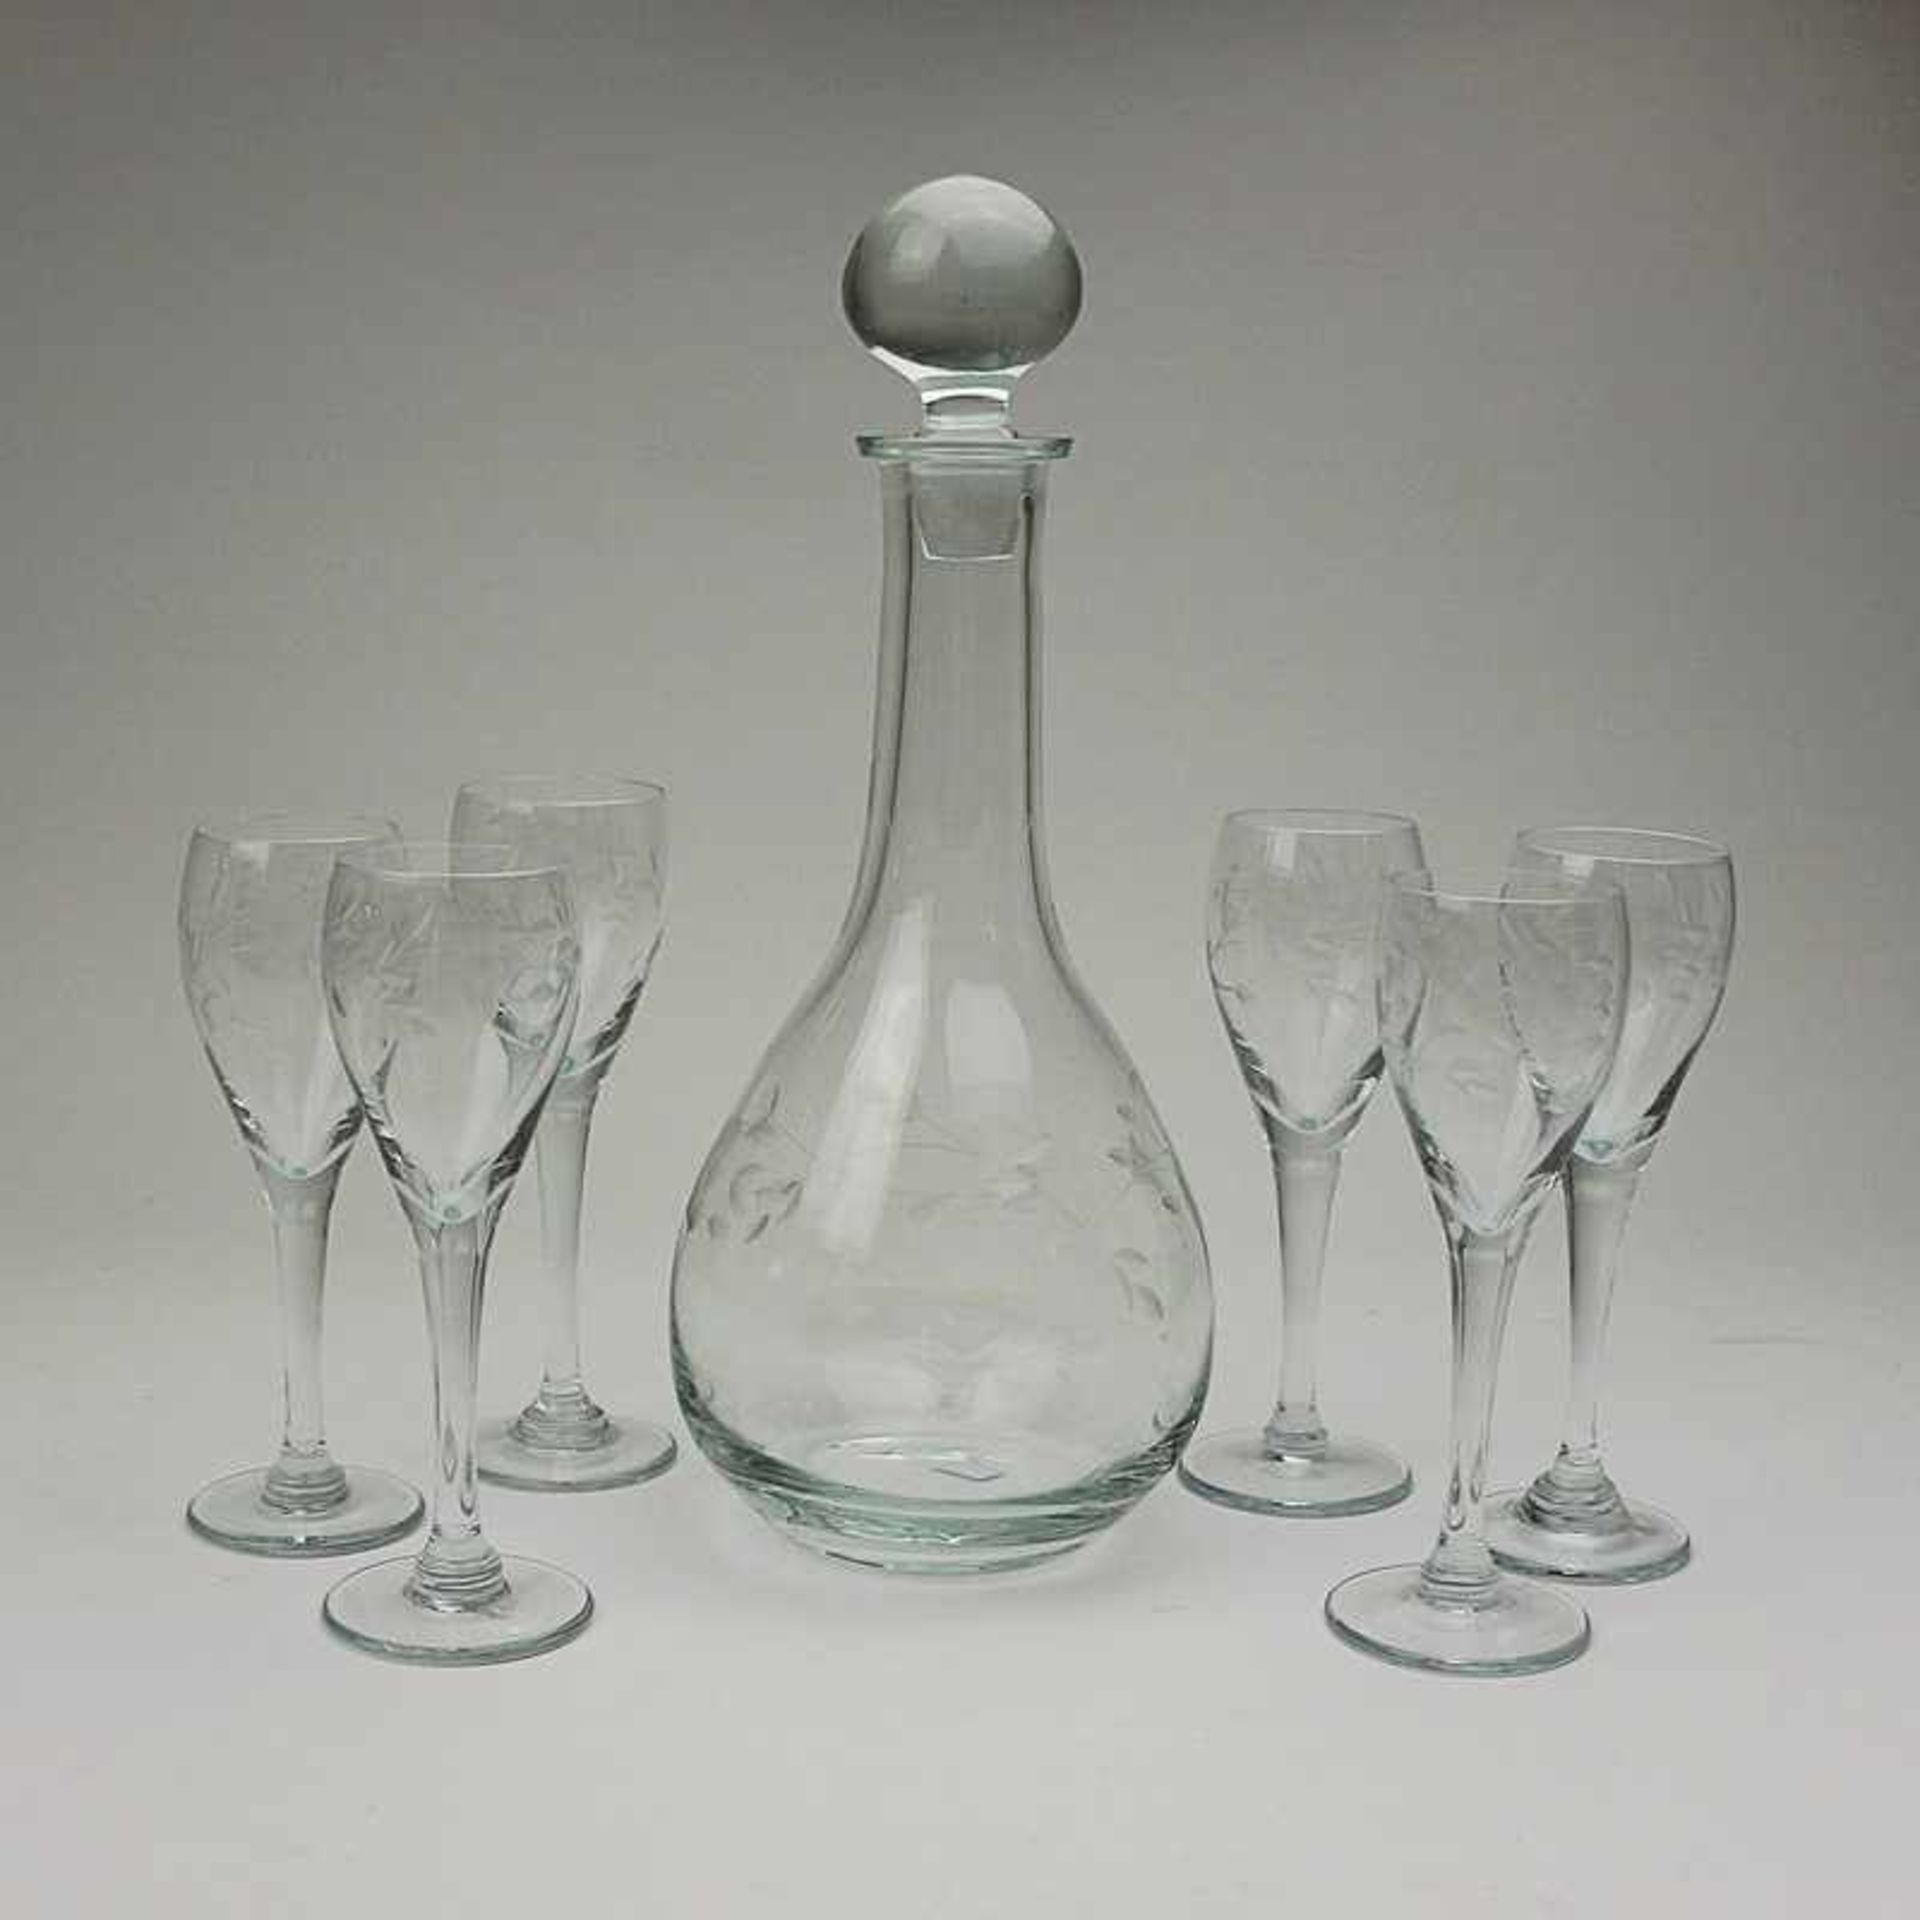 Likörset Karaffe m. 6 Gläsern, farbloses Glas, runder Stand, ovoider Korpus, schmaler Hals, leicht